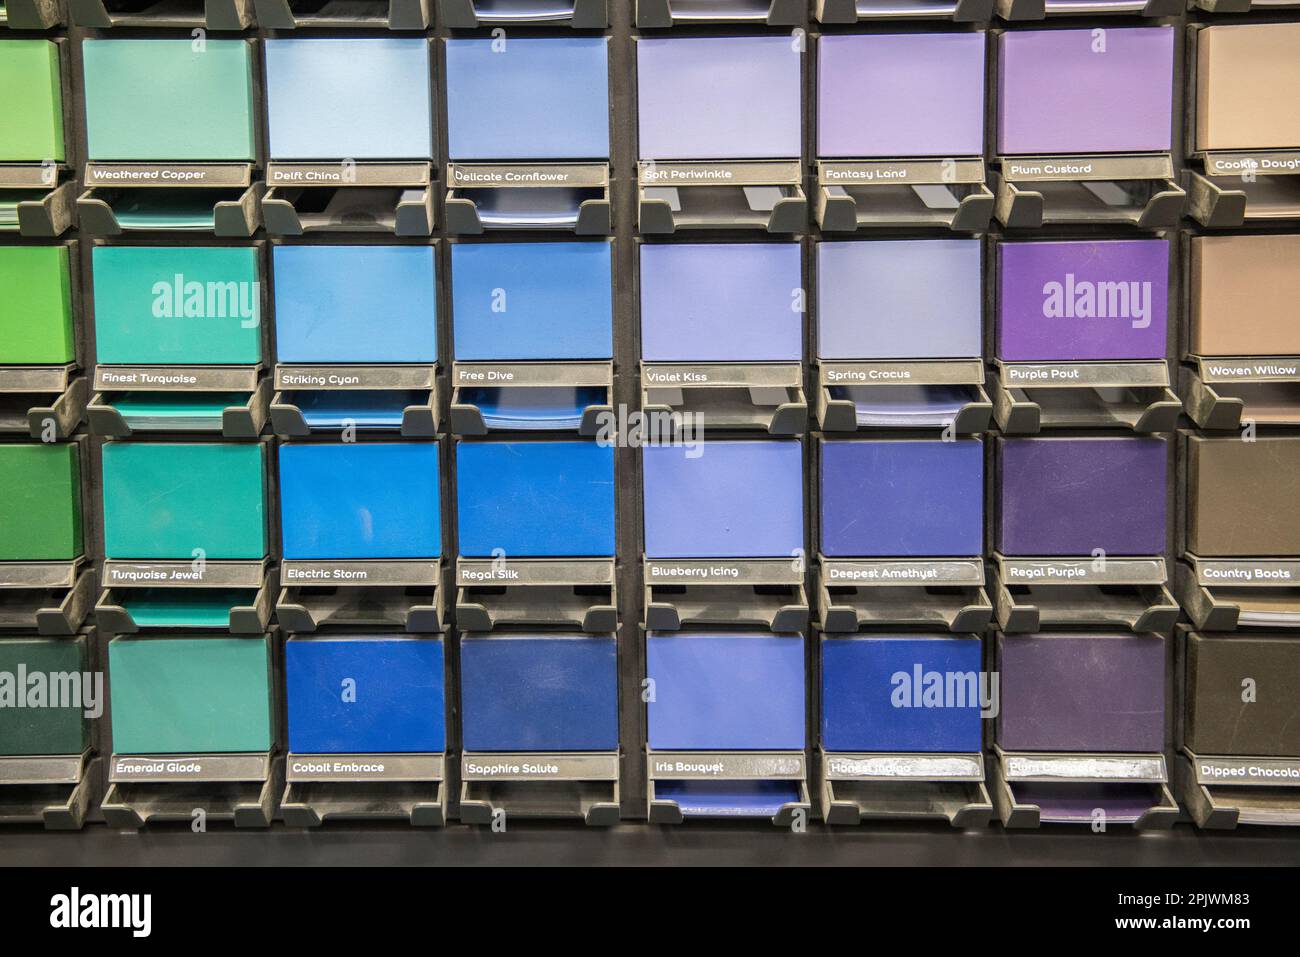 Farbfelder mit verschiedenen Farbsätzen, UK Stockfoto